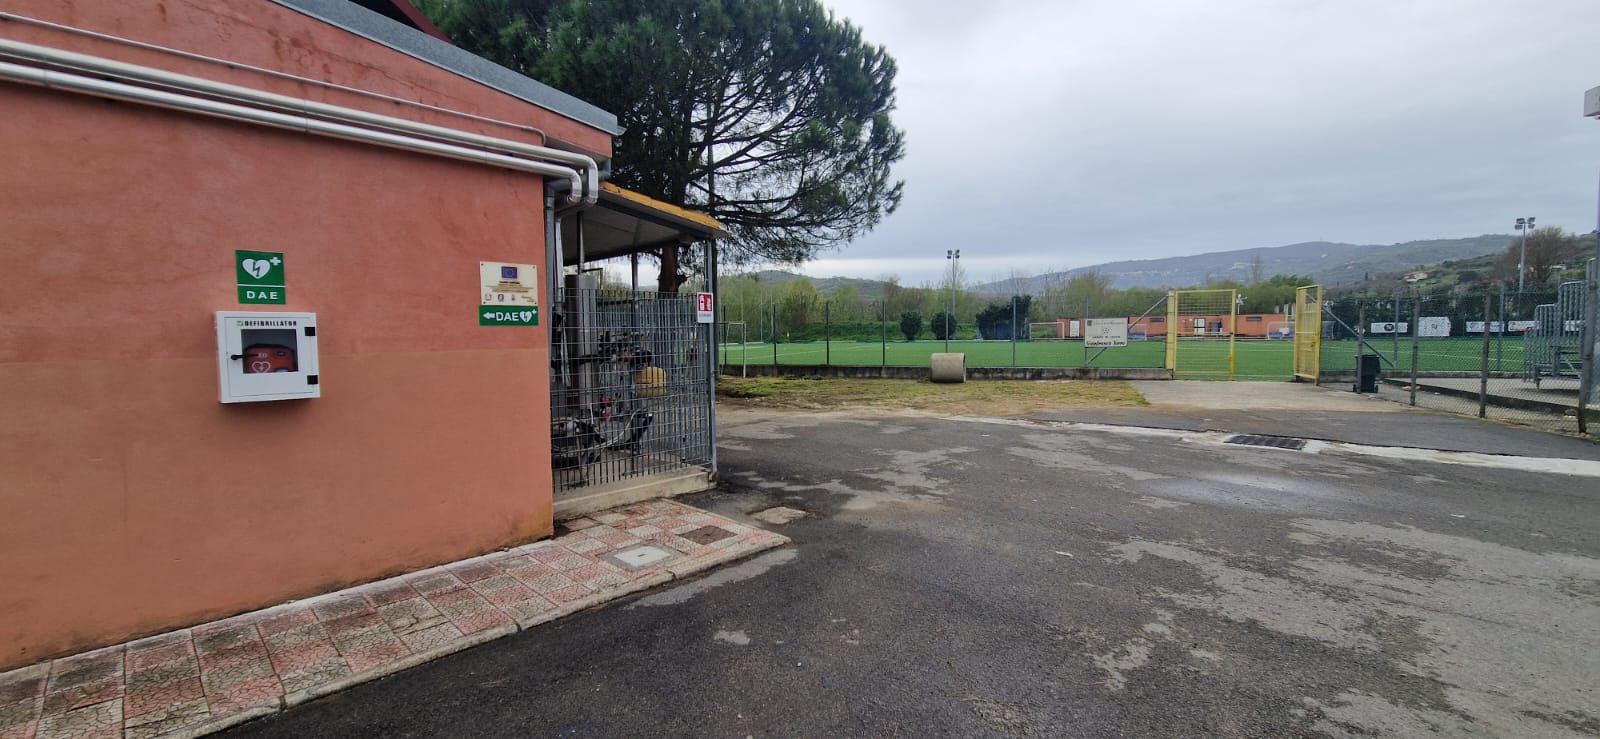 Installati cinque defibrillatori negli impianti sportivi del Comune di Agropoli